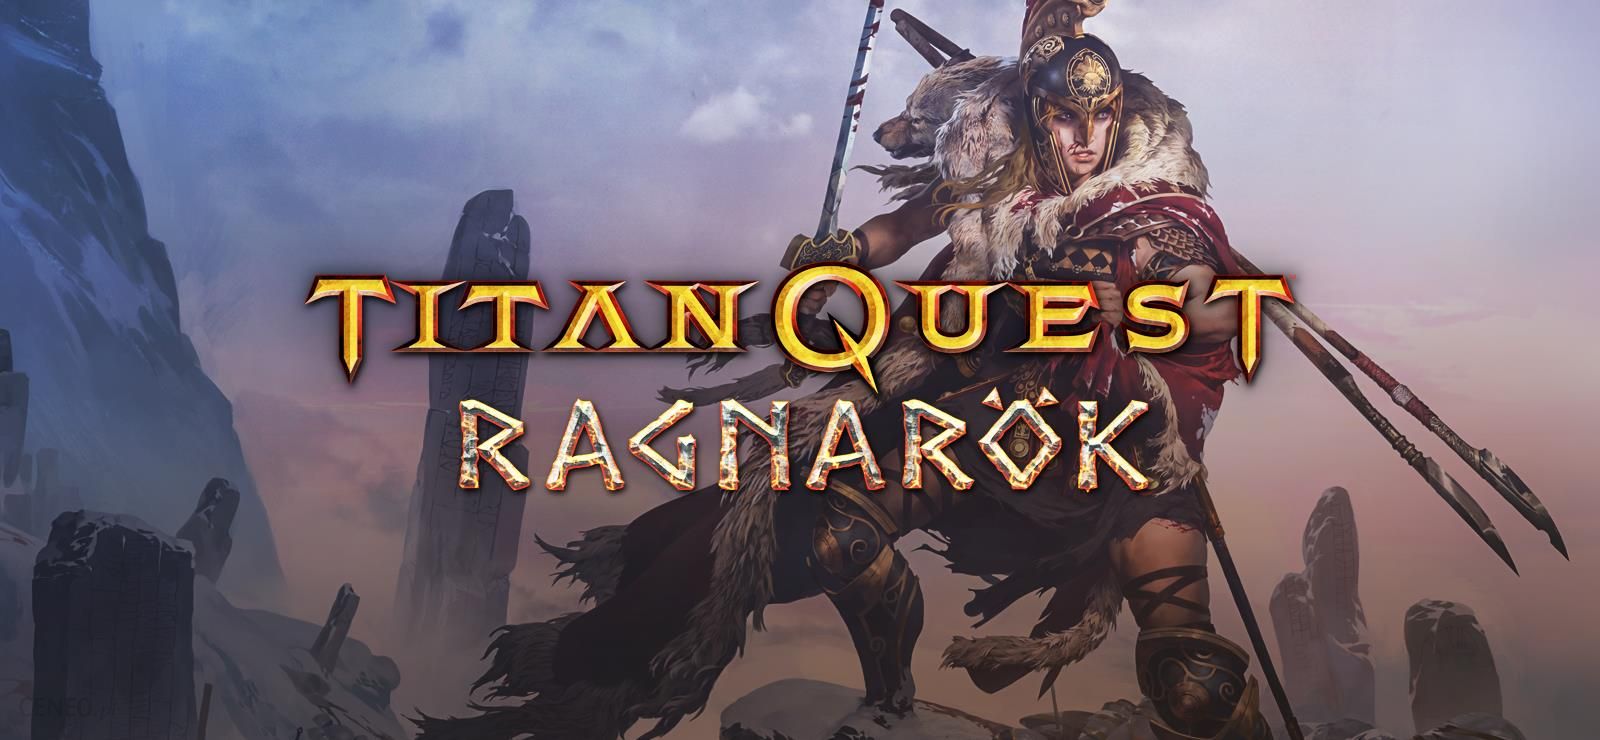 titan quest ragnarok release date